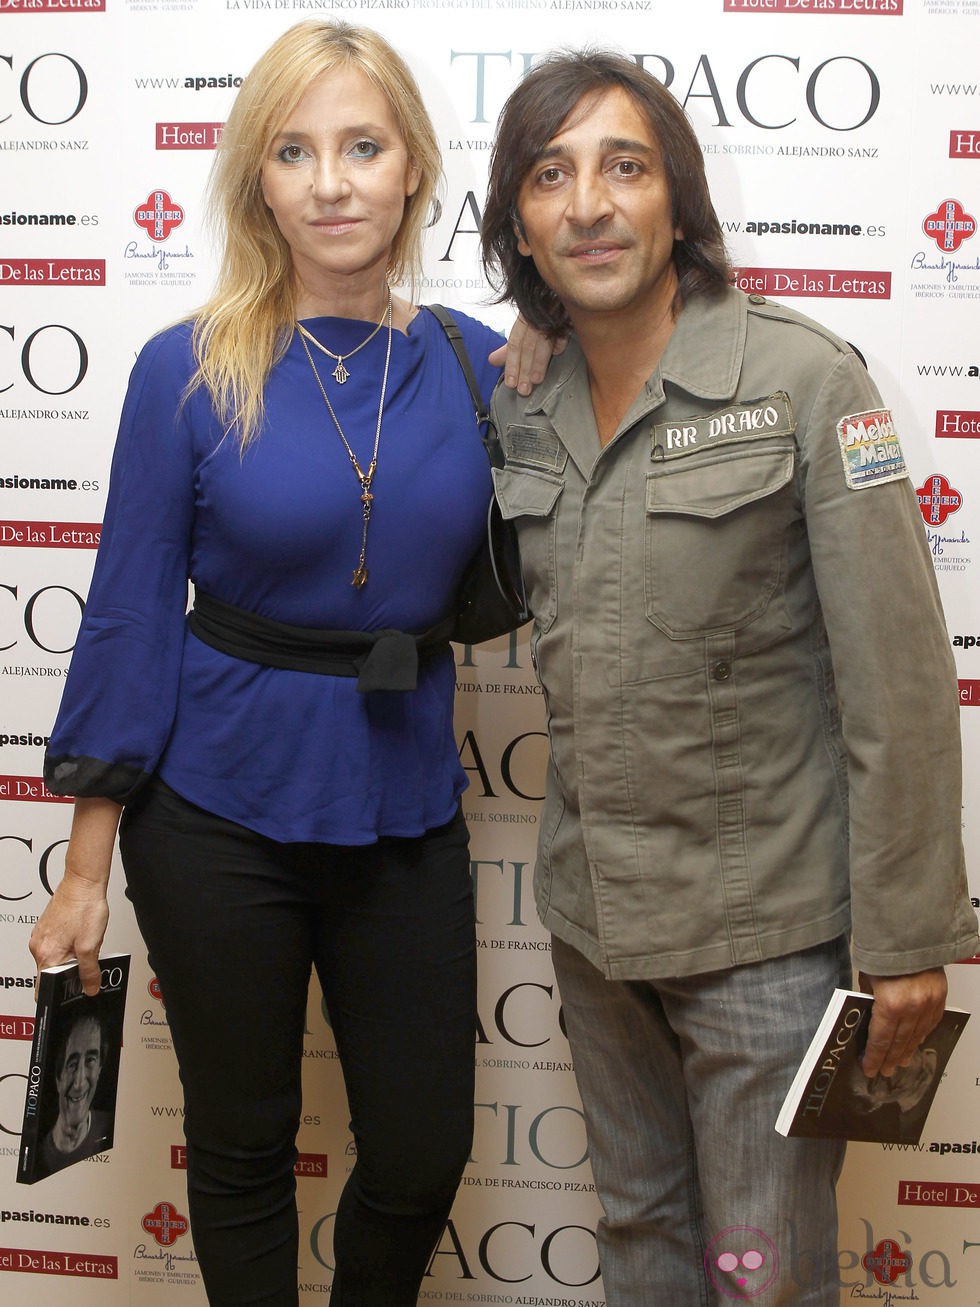 Antonio Carmona y Mariola Orellana en la presentación del libro 'Tío Paco'